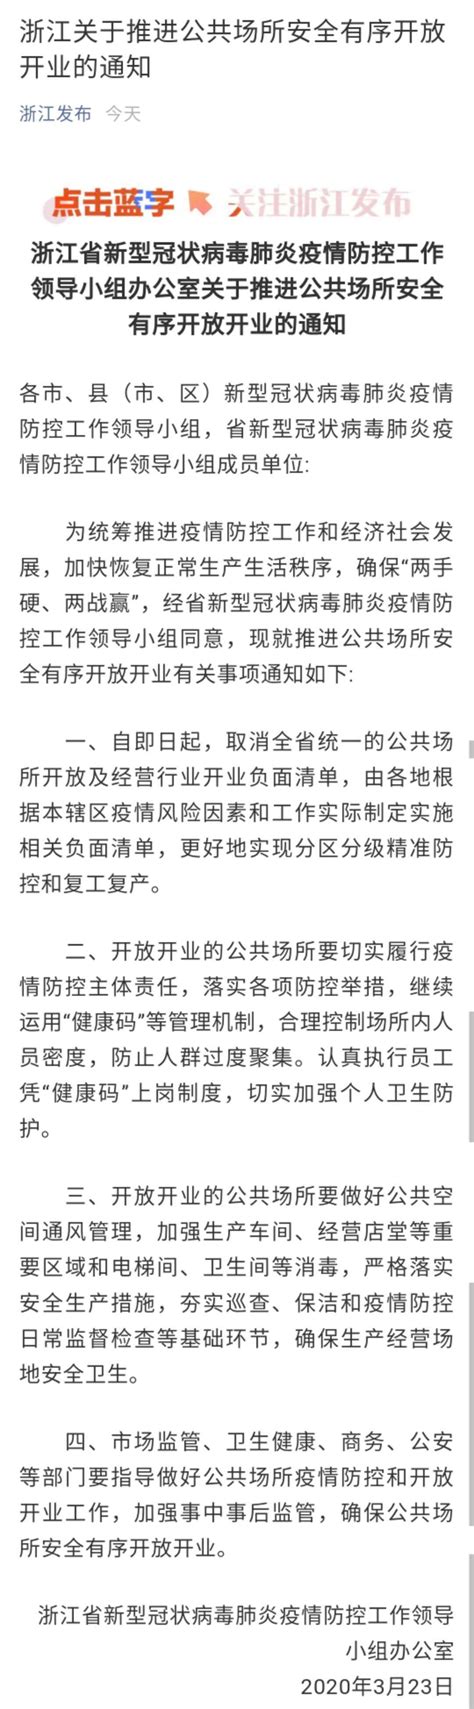 《浙江省公共数据条例》正式施行，促进数据依法开放共享-浙江工人日报网